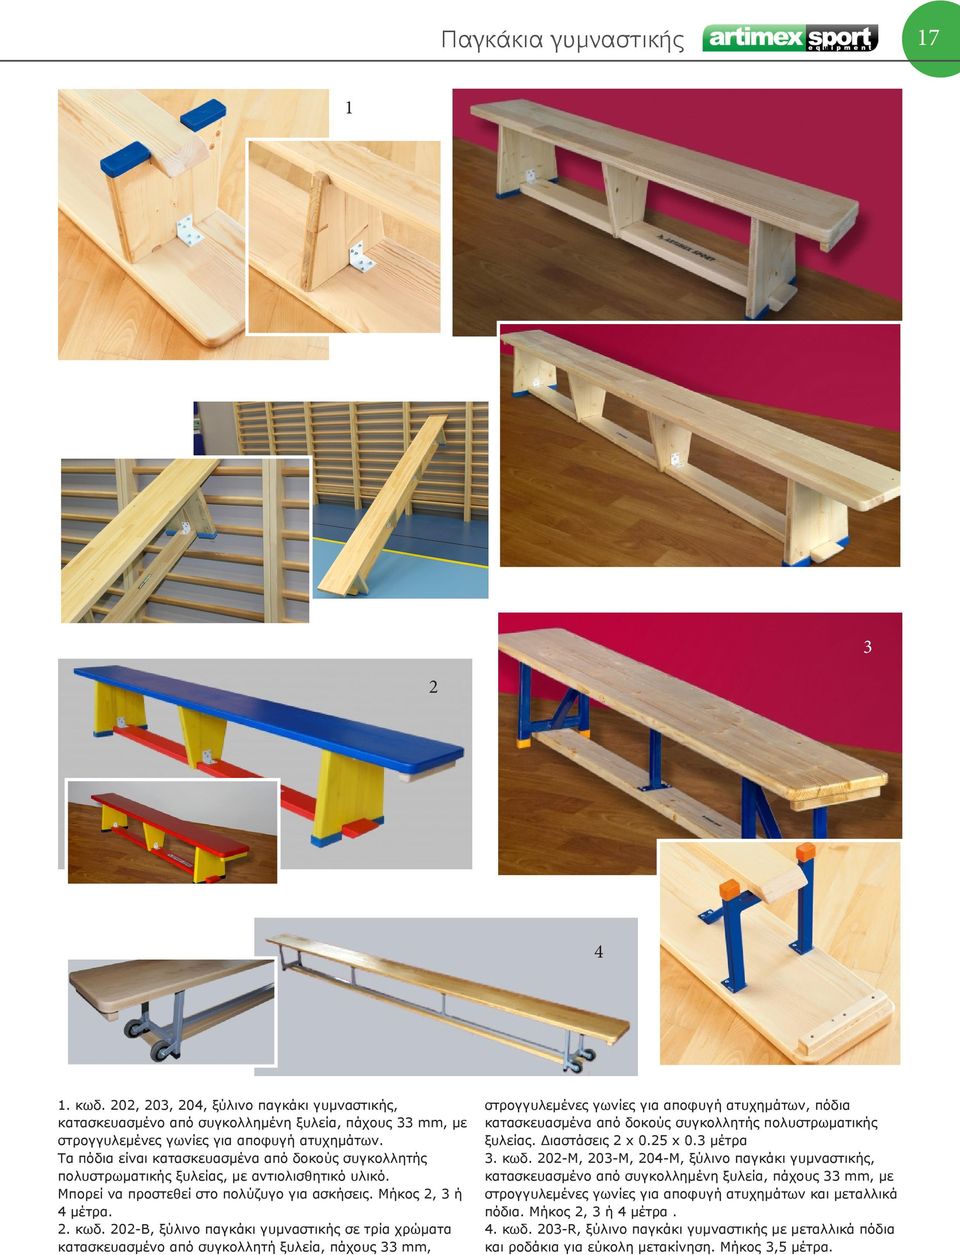 202-Β, ξύλινο παγκάκι γυμναστικής σε τρία χρώματα κατασκευασμένο από συγκολλητή ξυλεία, πάχους mm, στρογγυλεμένες γωνίες για αποφυγή ατυχημάτων, πόδια κατασκευασμένα από δοκούς συγκολλητής